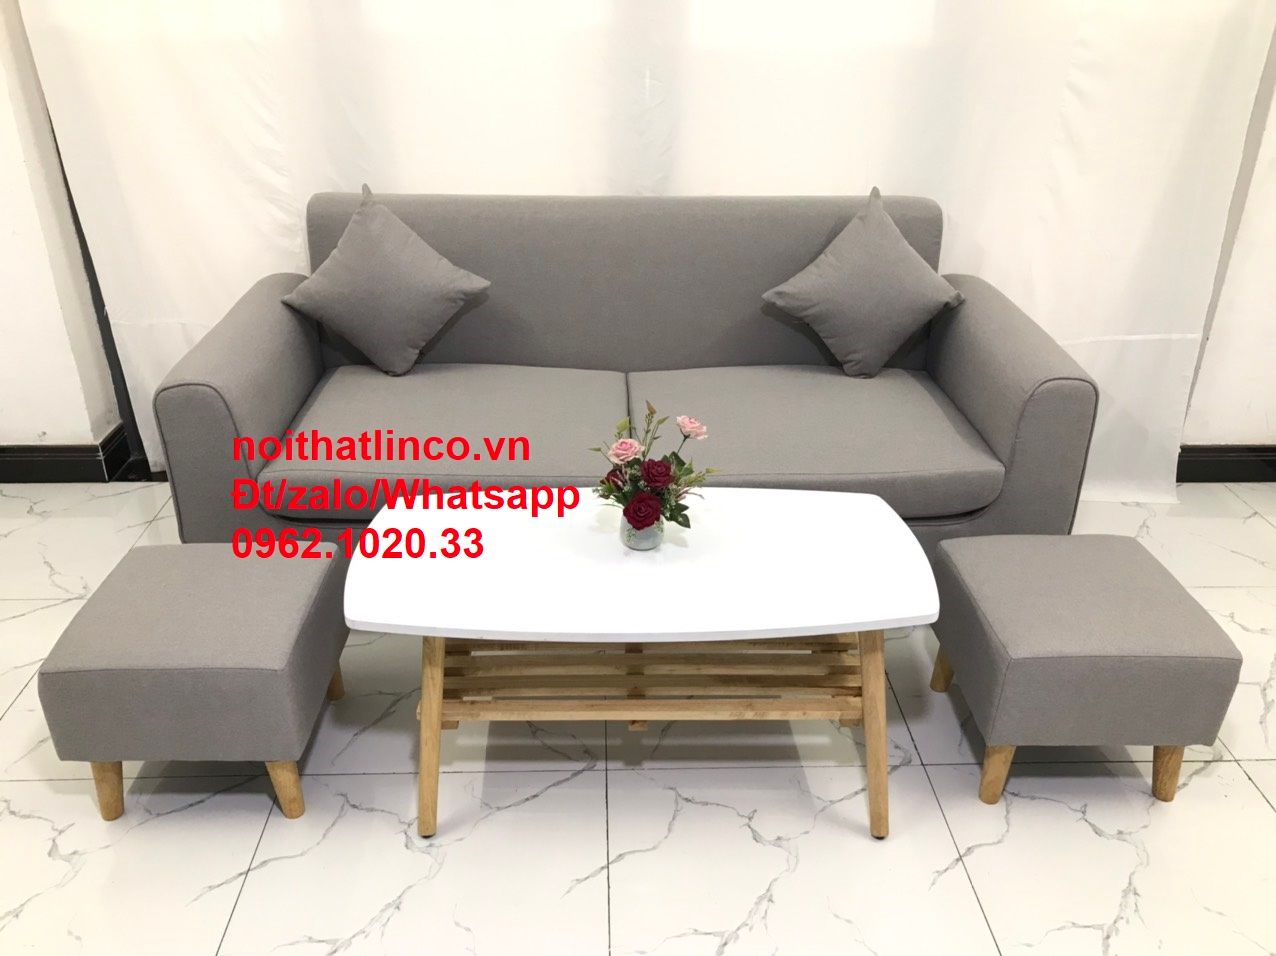  Bộ bàn ghế salon sofa băng xám ghi trắng giá rẻ đẹp dài 1m9 